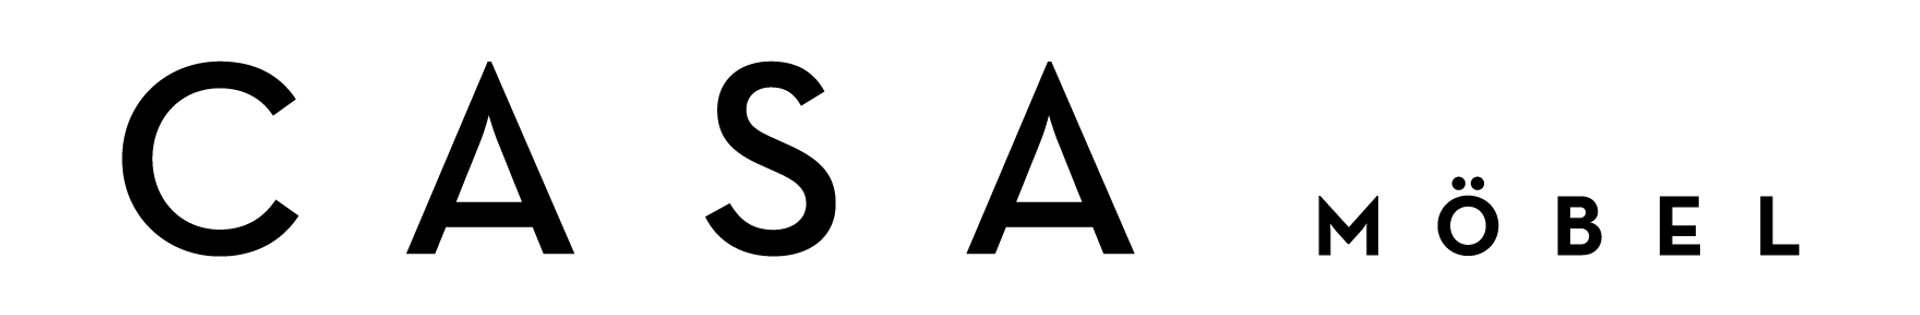 CASA logo die aktuell Flugblatt